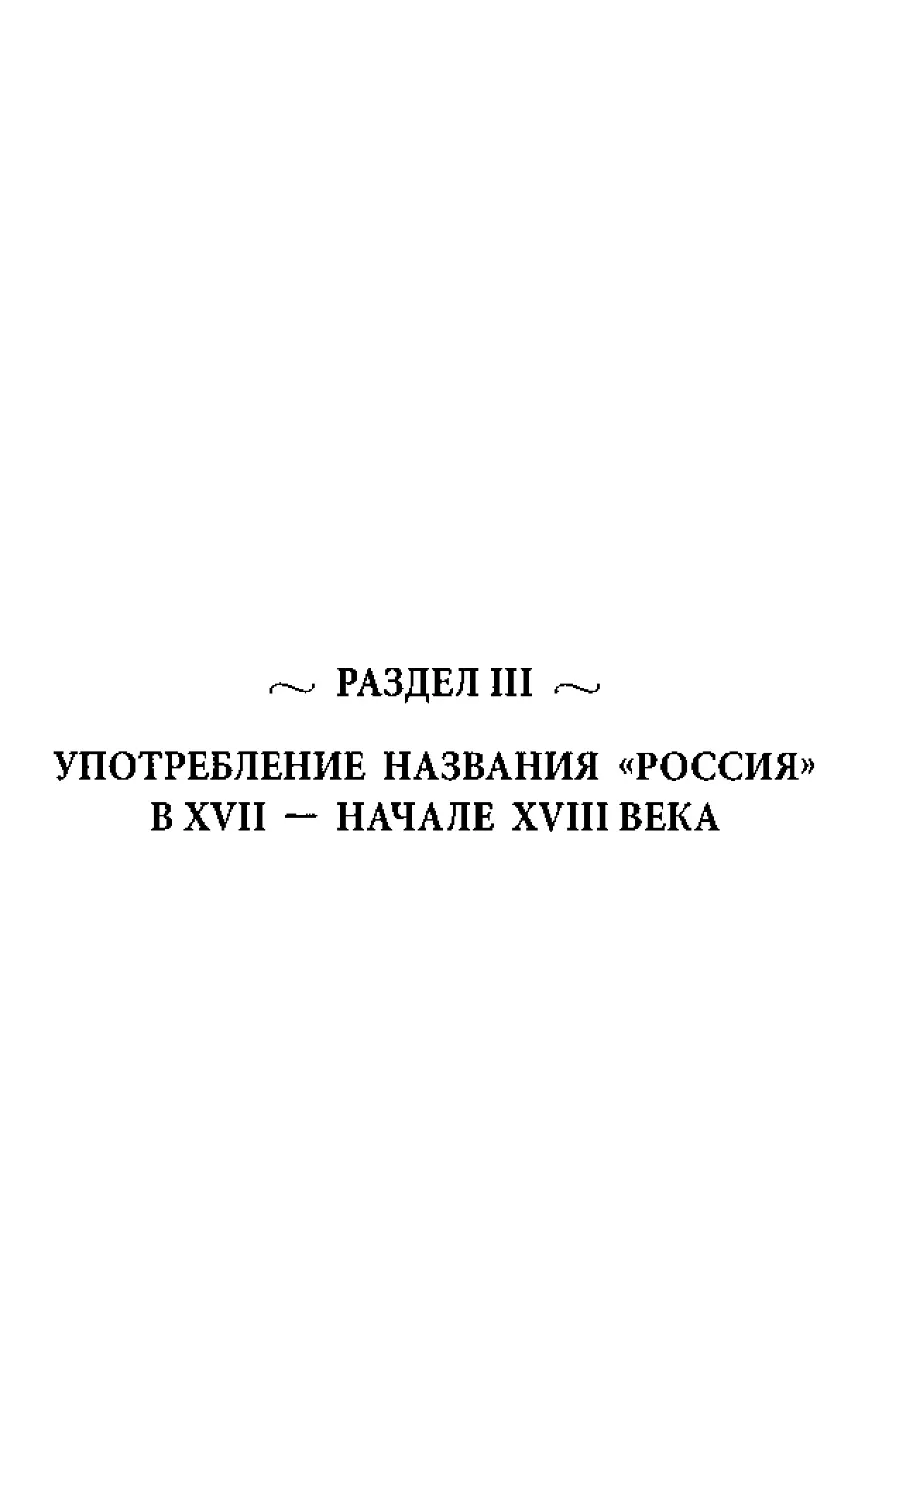 ﻿РАЗДЕЛ III. УПОТРЕБЛЕНИЕ НАЗВАНИЯ «РОССИЯ» В XVII - НАЧАЛЕ XVIII ВЕК